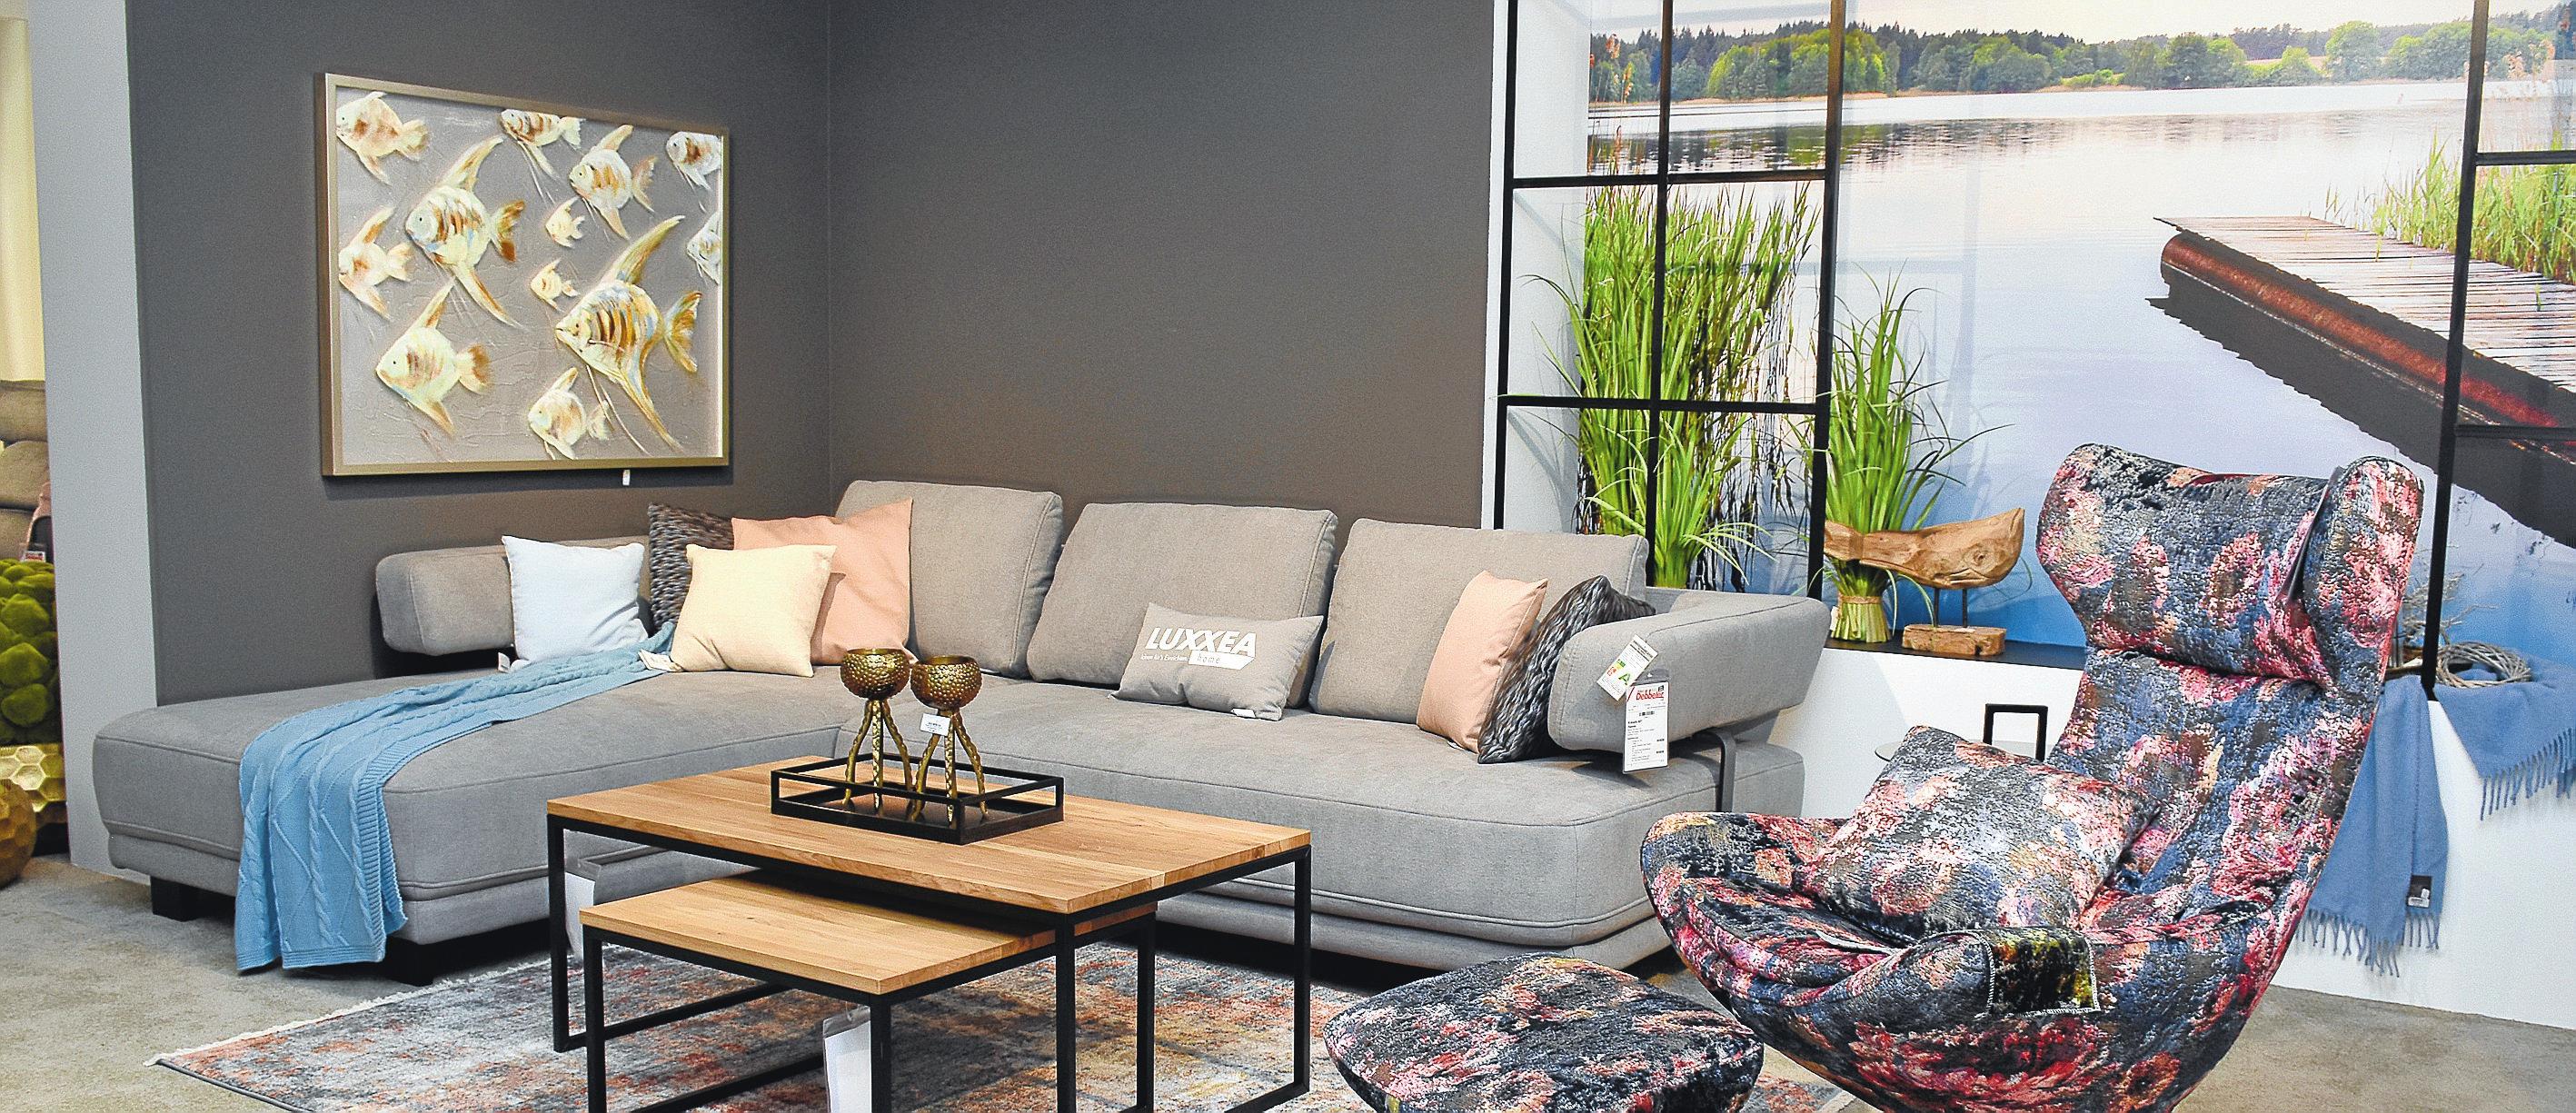 Schöner wohnen: Mit den stilvollen Einrichtungsideen von Möbel Debbeler wird jedes Zuhause zu einer Wohlfühloase. Fotos: Schulte-Sass